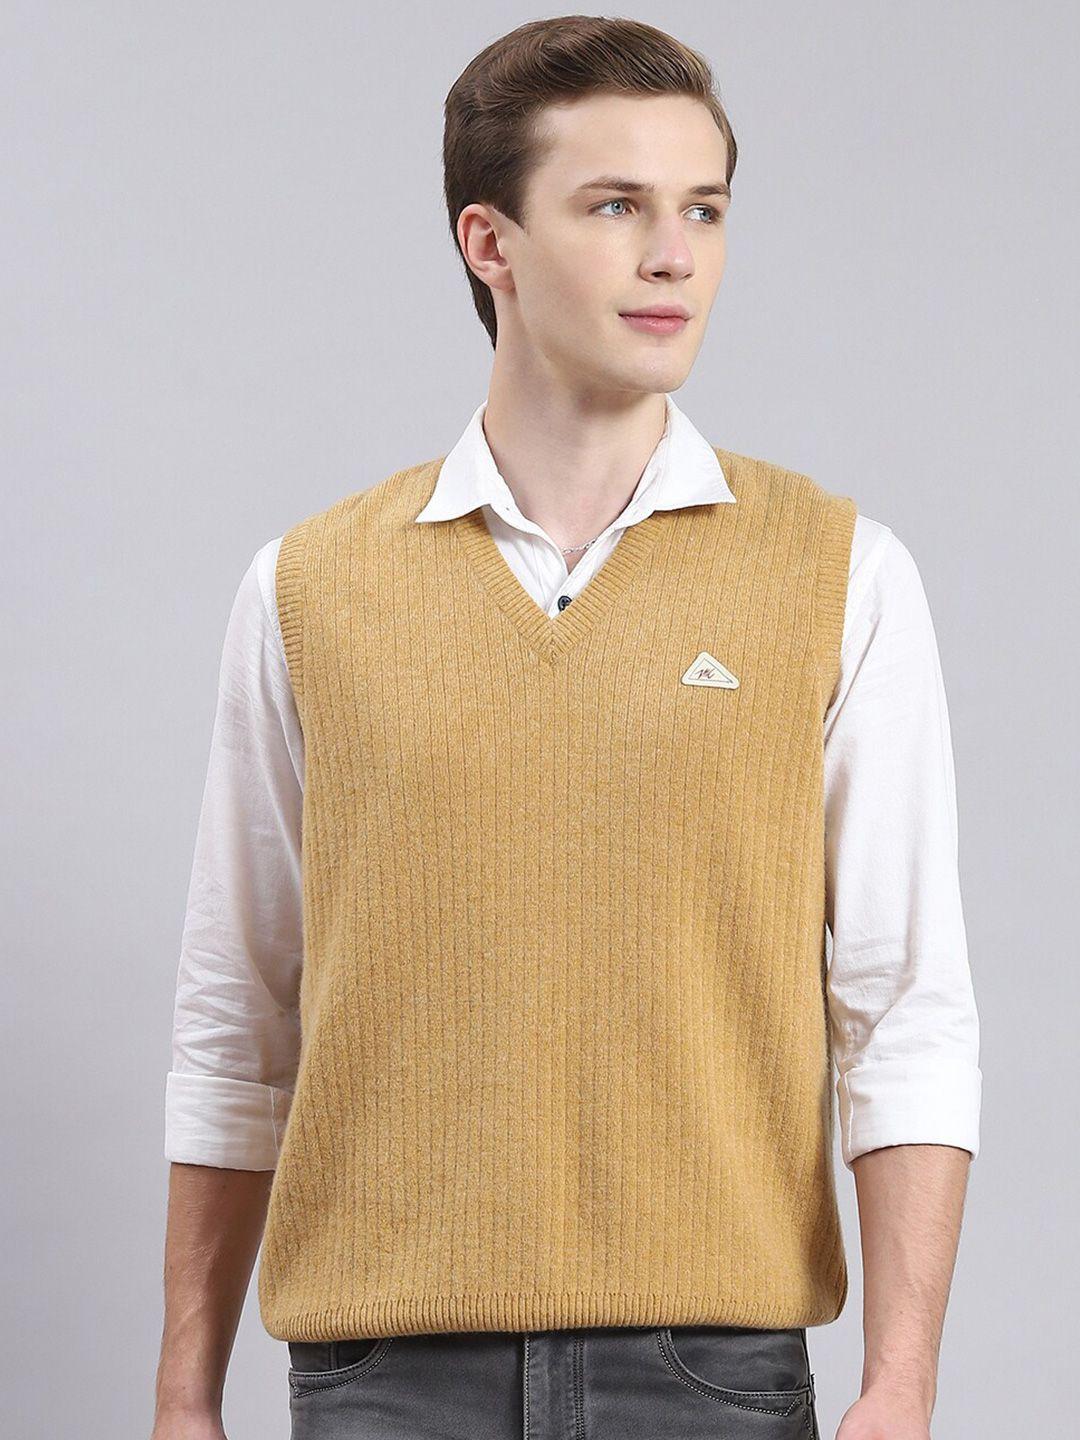 monte-carlo-v-neck-woollen-sweater-vest